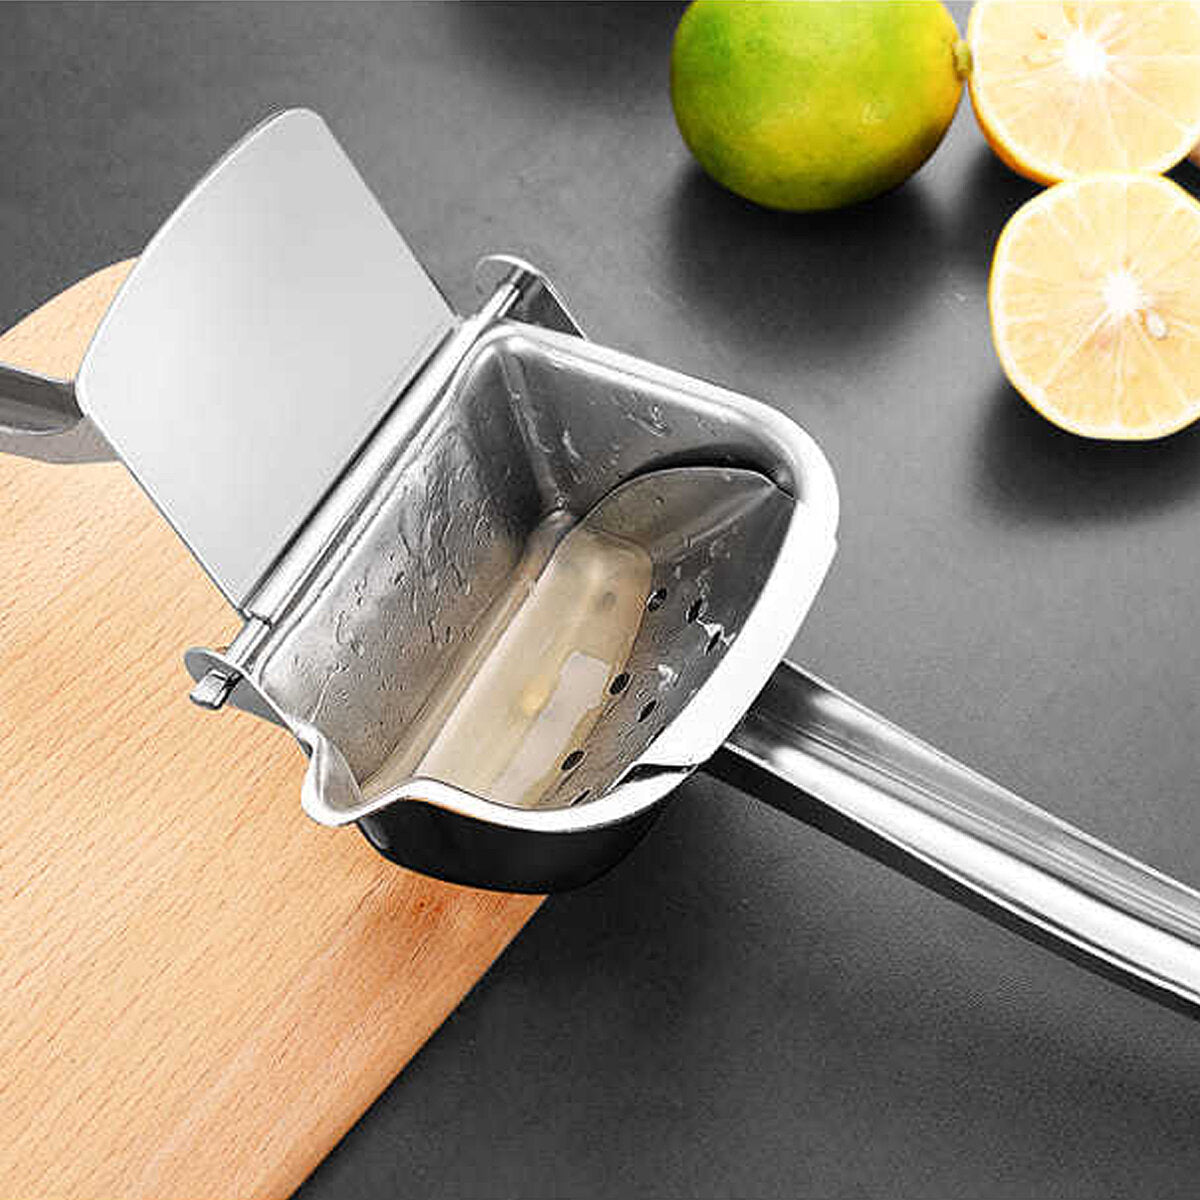 Manual Fruit Juicer Stainless Steel Crusher Squeezer Hand Press Lemon Orange